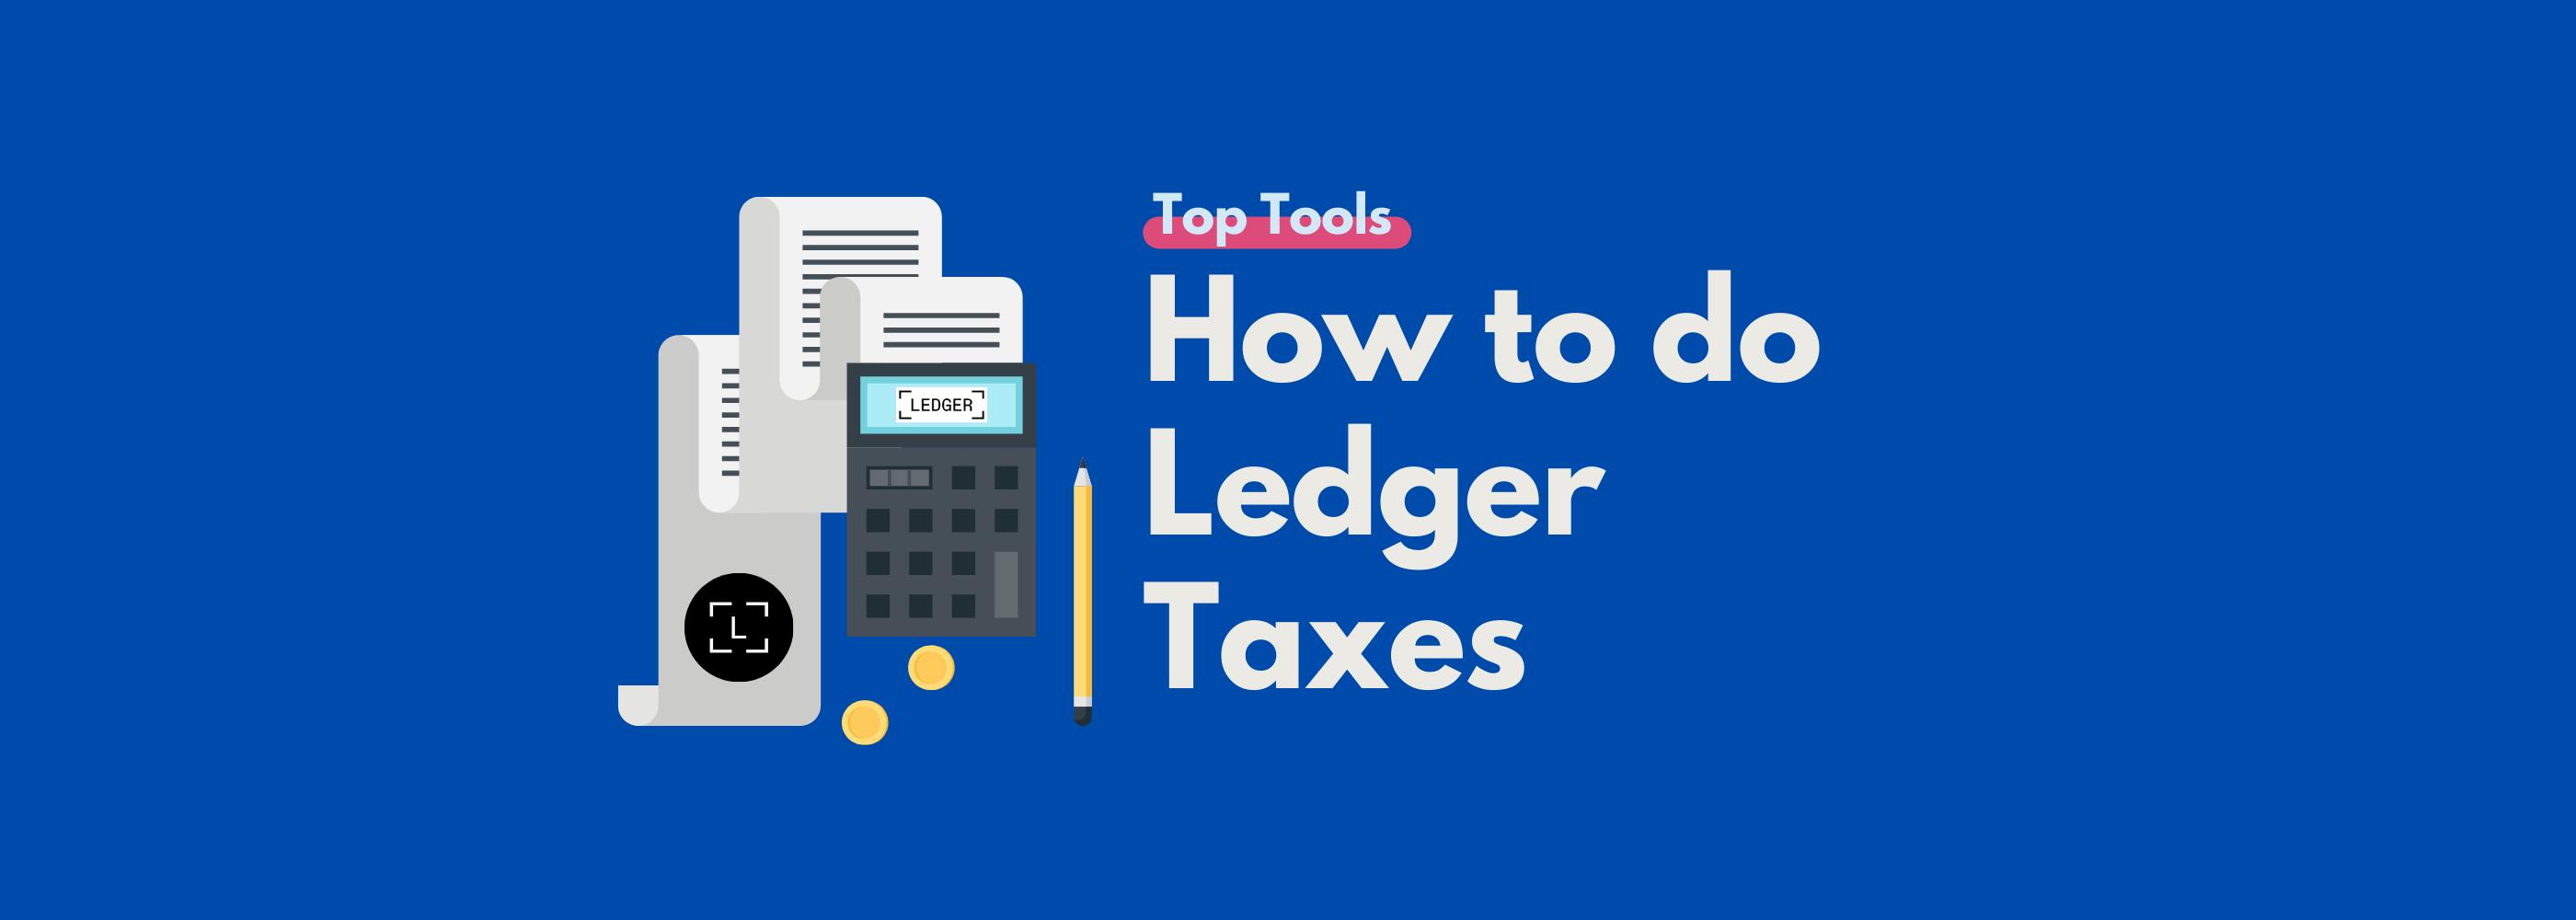 How to do Ledger Taxes